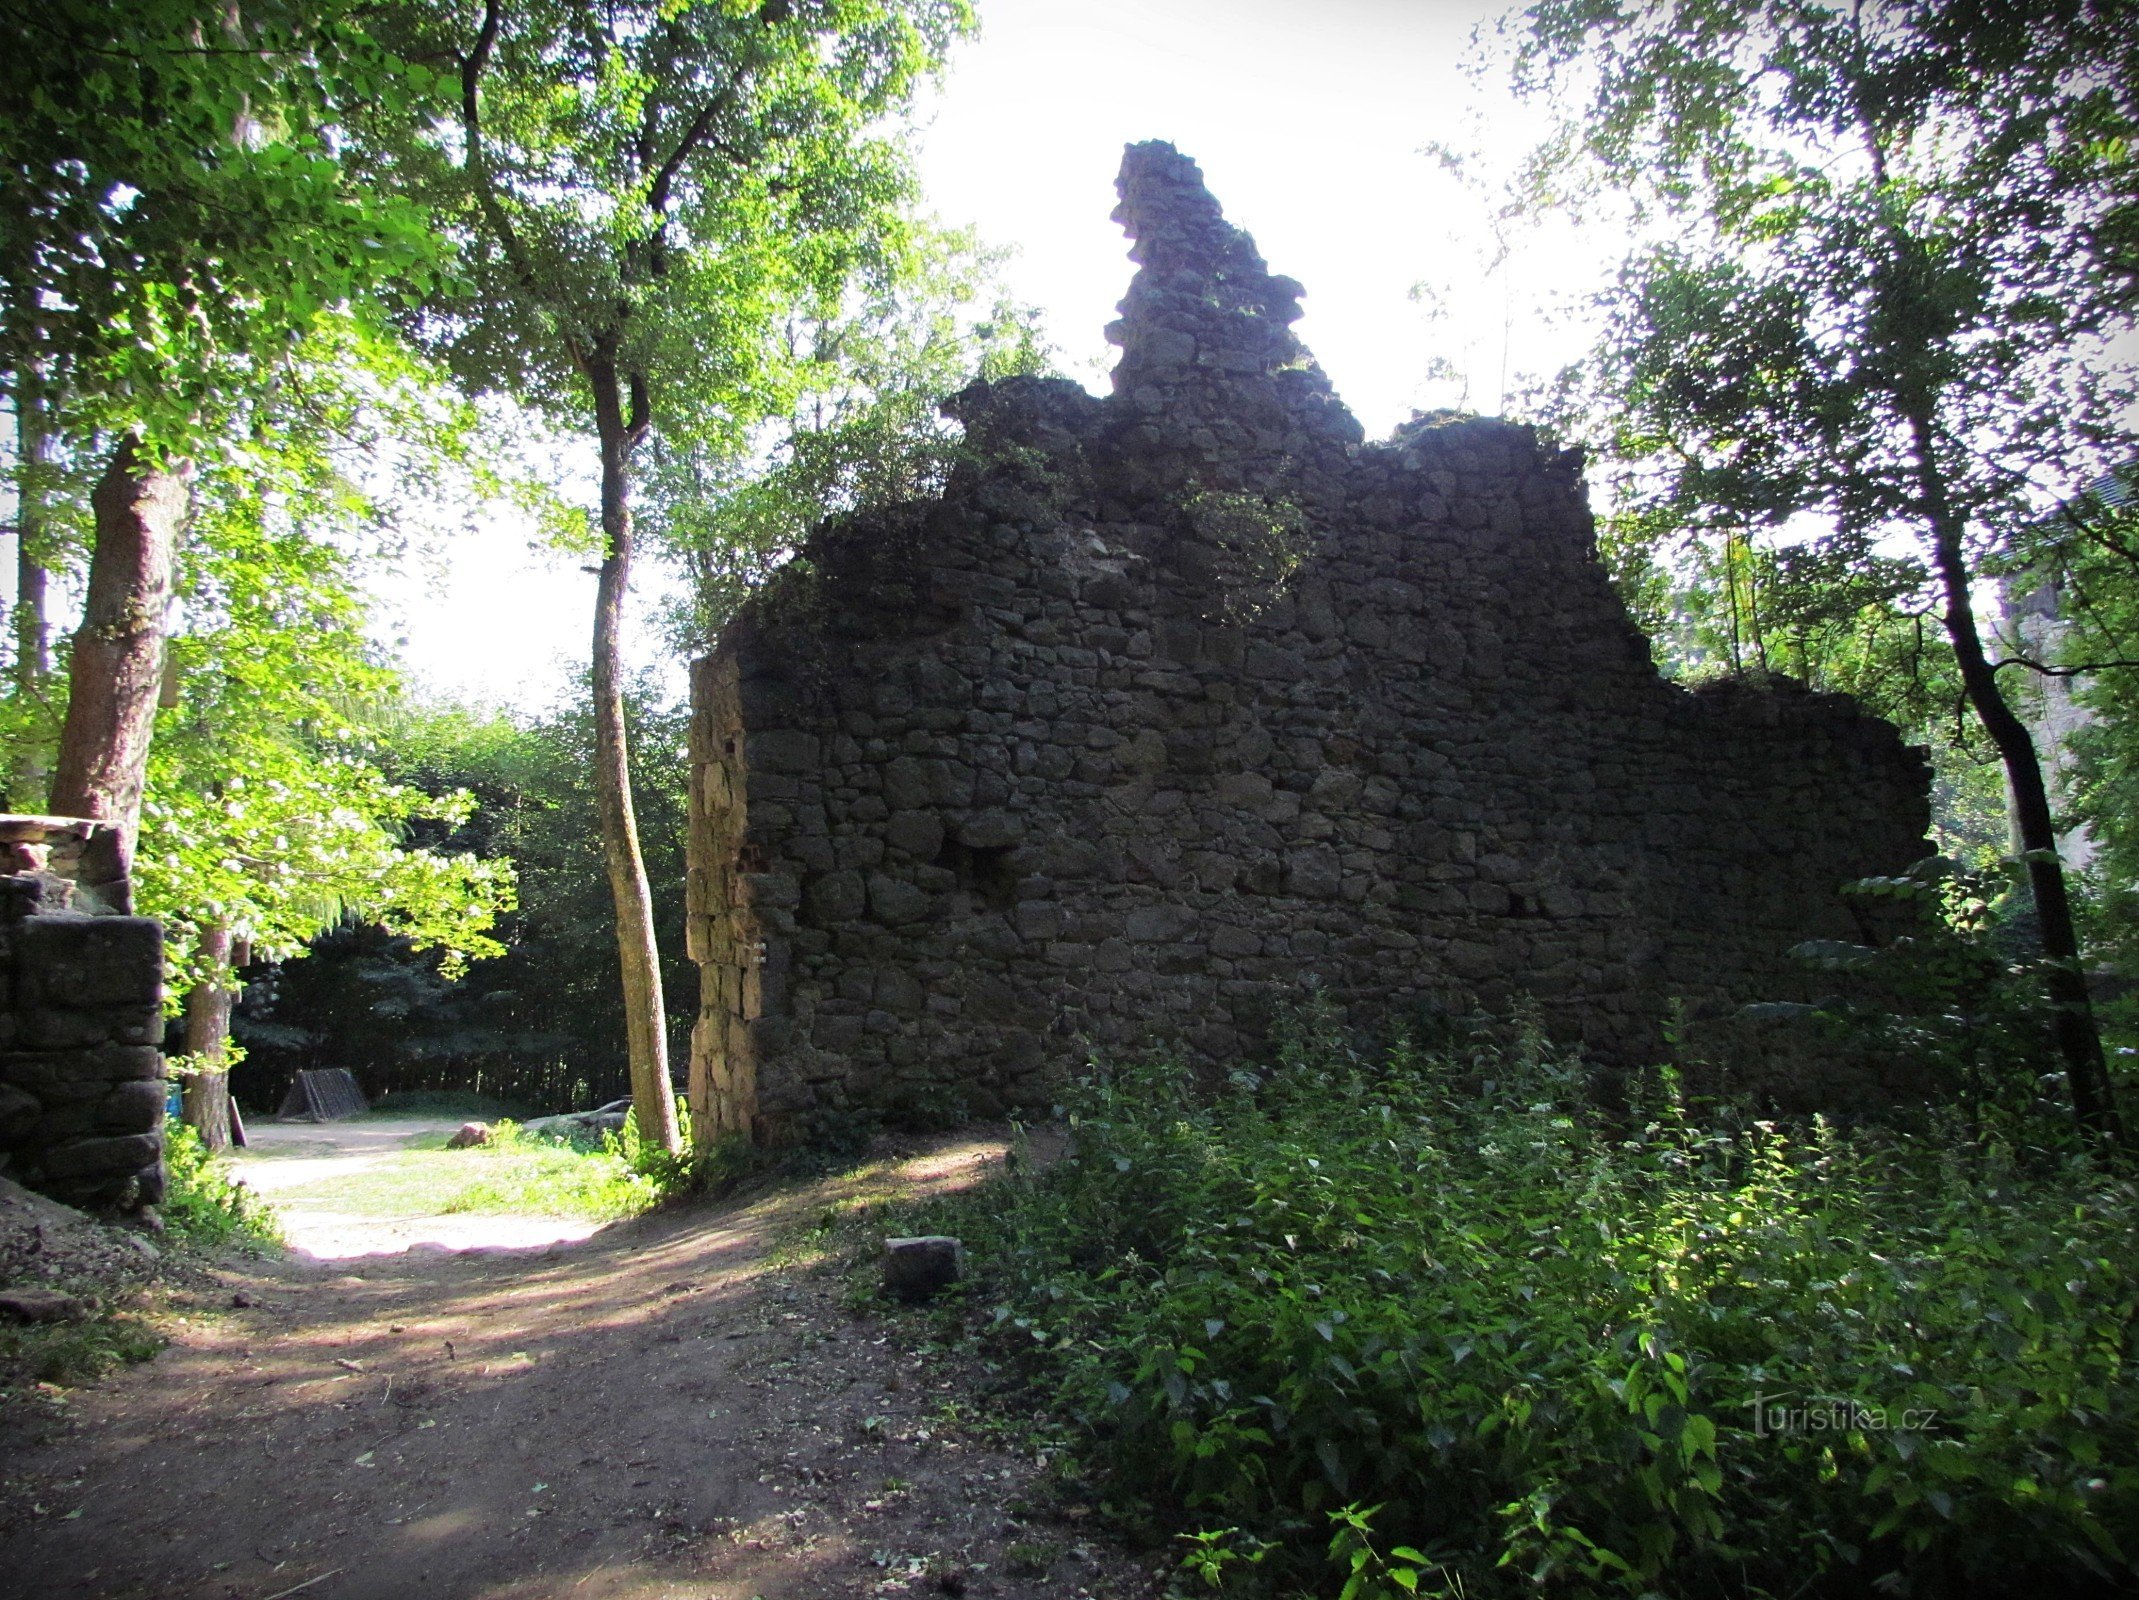 Suk de roche près du château de Lukova